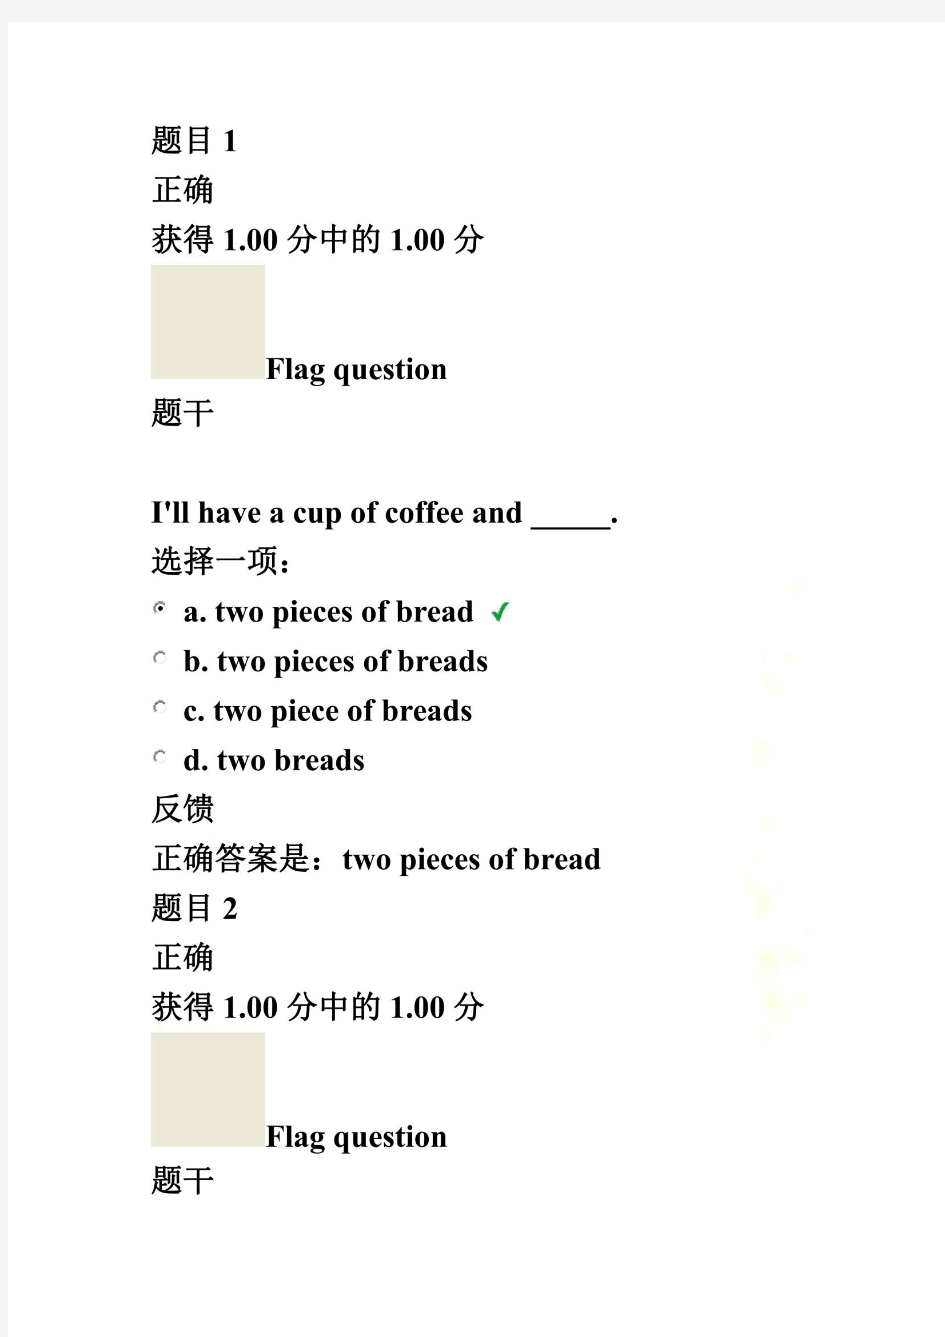 上海交大英语第一次作业(语法)